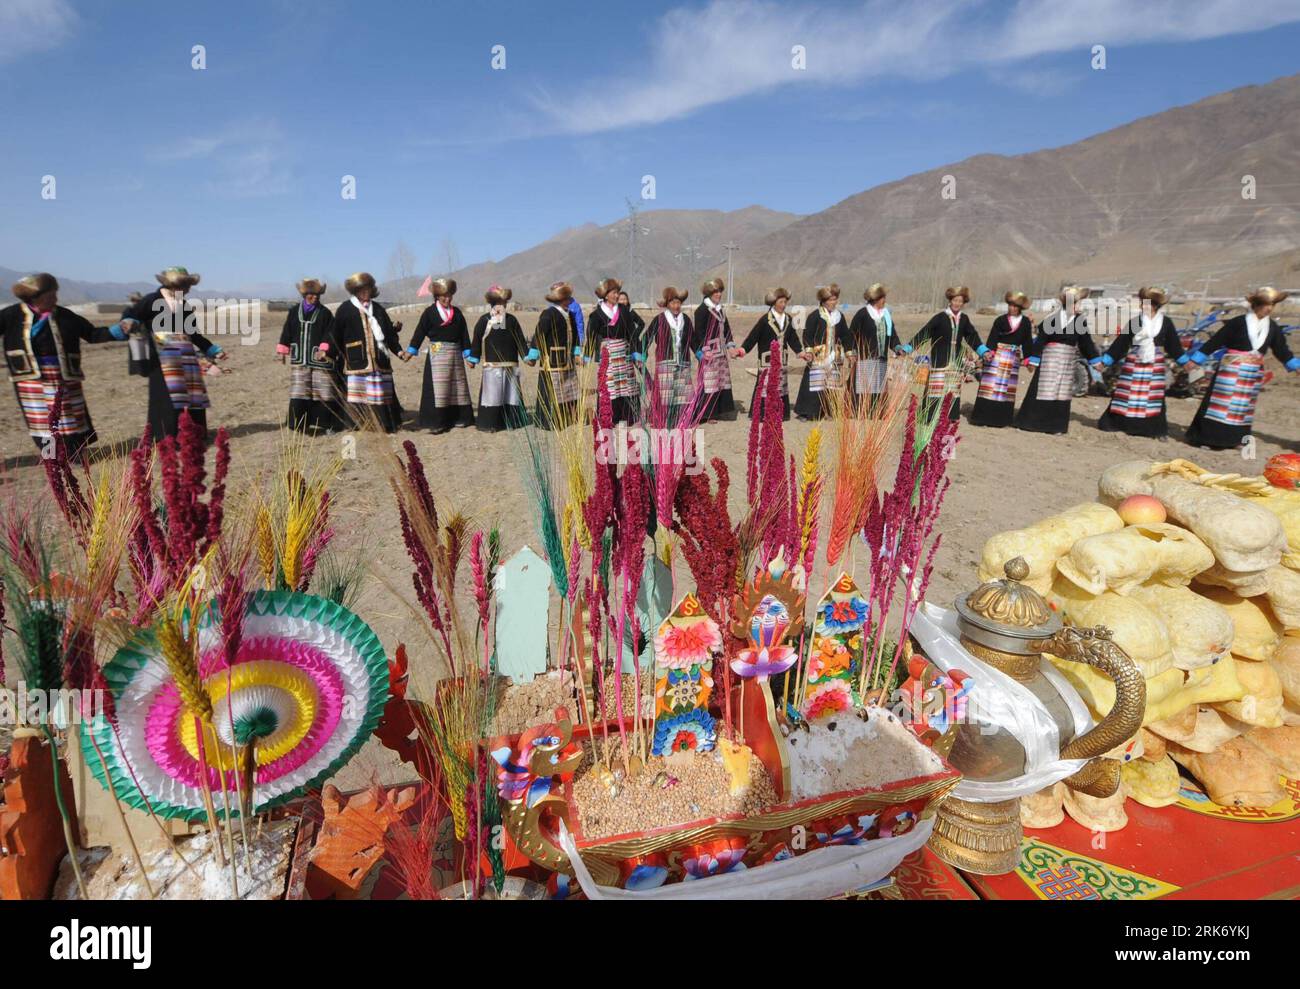 Bildnummer: 53860105 Datum: 16.03.2010 Copyright: imago/Xinhua (100316) -- LHASA, 16. März 2010 (Xinhua) -- Dorfbewohner tanzen während der Pflugzeremonie im Frühjahr in der Provinz Dagze im Südwesten Chinas, der autonomen Region Tibet, am 16. März 2010. Die Bauern in Tibet begannen ihre Frühjahrspflüge am Dienstag, dem ersten Tag im Februar im tibetischen Kalender. (Xinhua/Soinam Norbu) (zcq) (8)CHINA-TIBET-SPRING PFLÜGEN (CN) PUBLICATIONxNOTxINxCHN Landwirtschaft Gesellschaft Land Leute kbdig xsk 2010 quer o0 Frühlingsfest Frühling Pflügfest Bildnummer 53860105 Datum 16 03 2010 Copyright Imago X Stockfoto